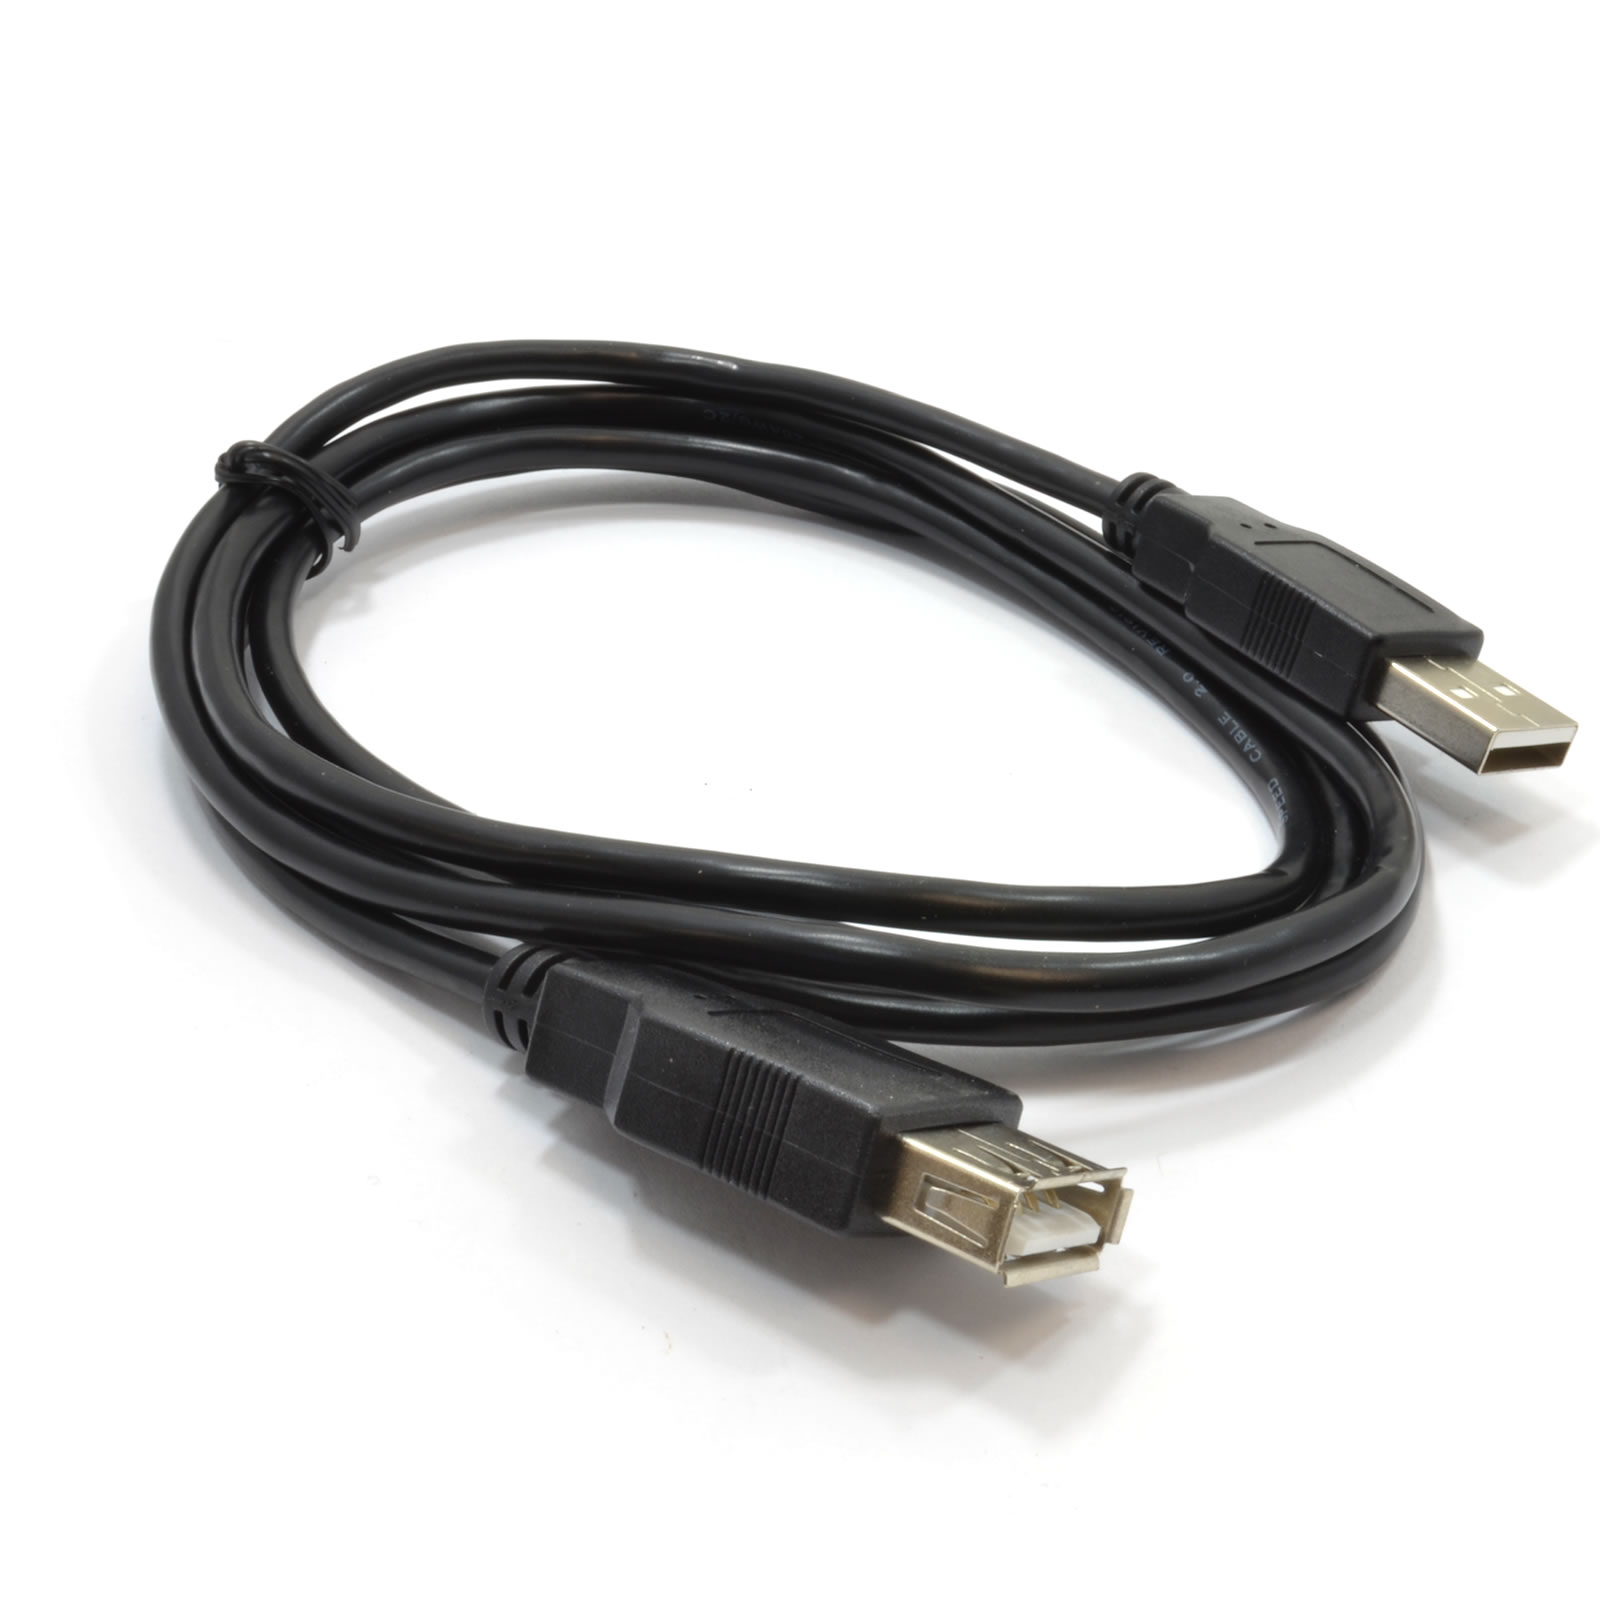 کابل افزایش طول USB کی-نت به طول 1.5 متر